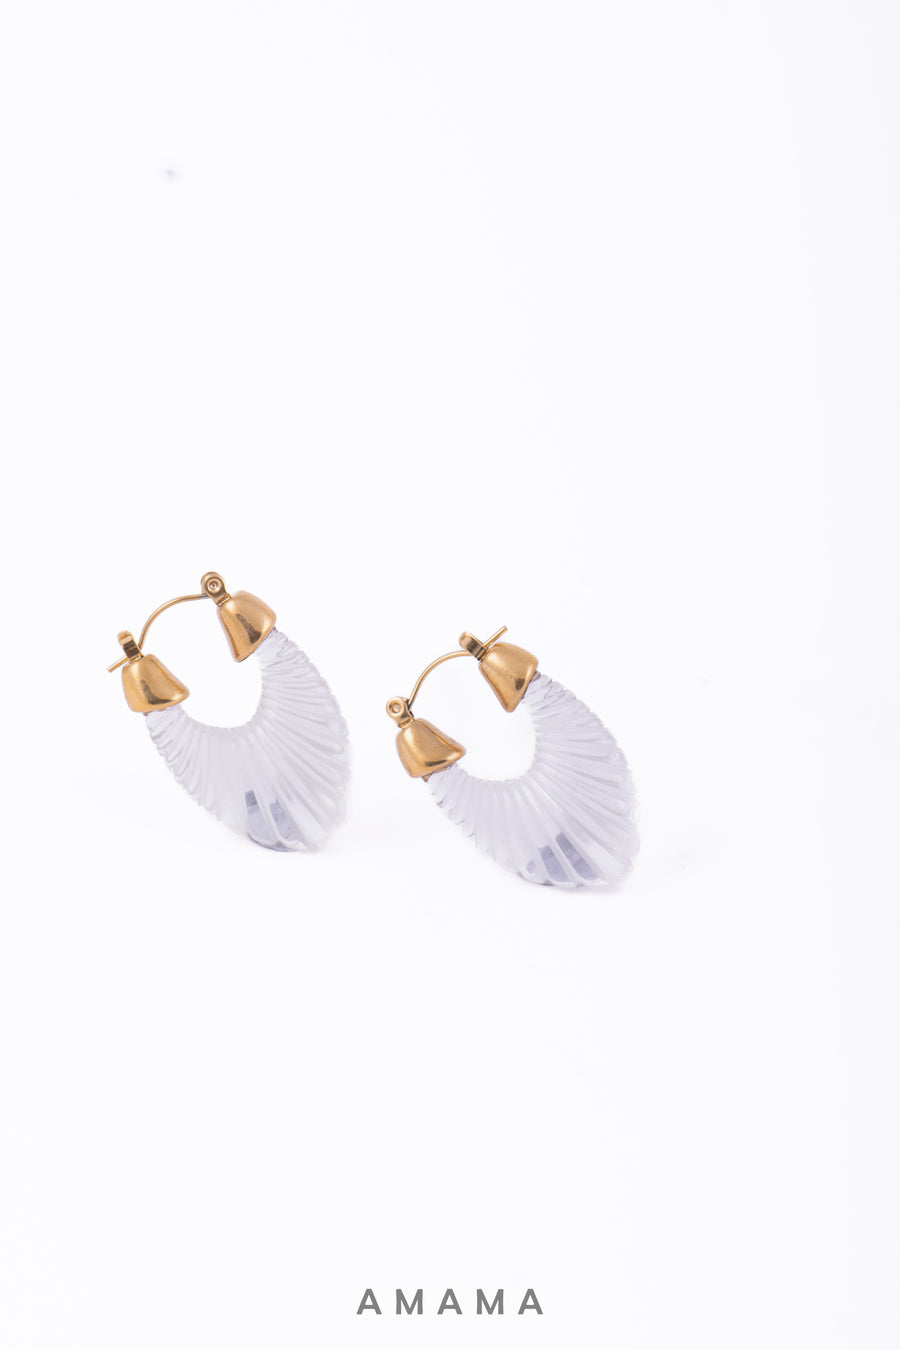 Emica Earrings in White